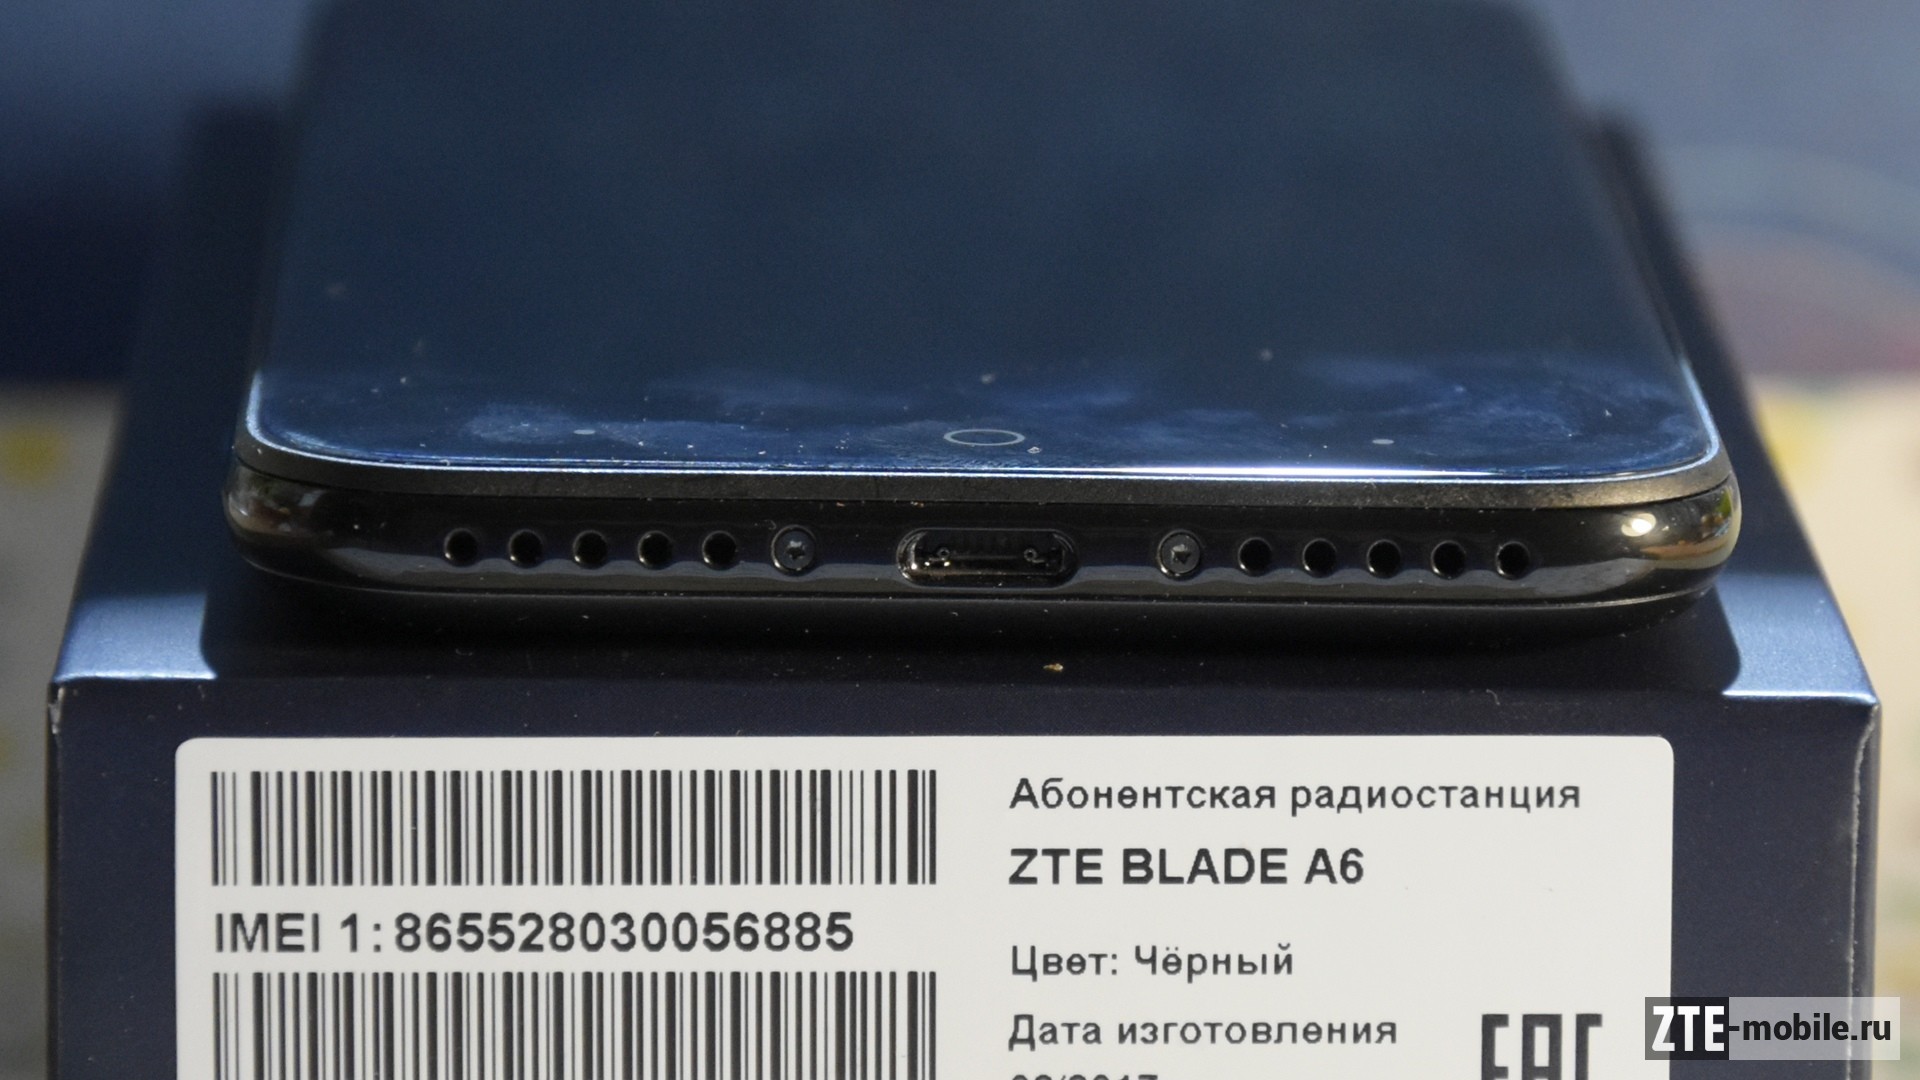 Zte blade-a6 max - обзор смартфона, достоинства и недостатки